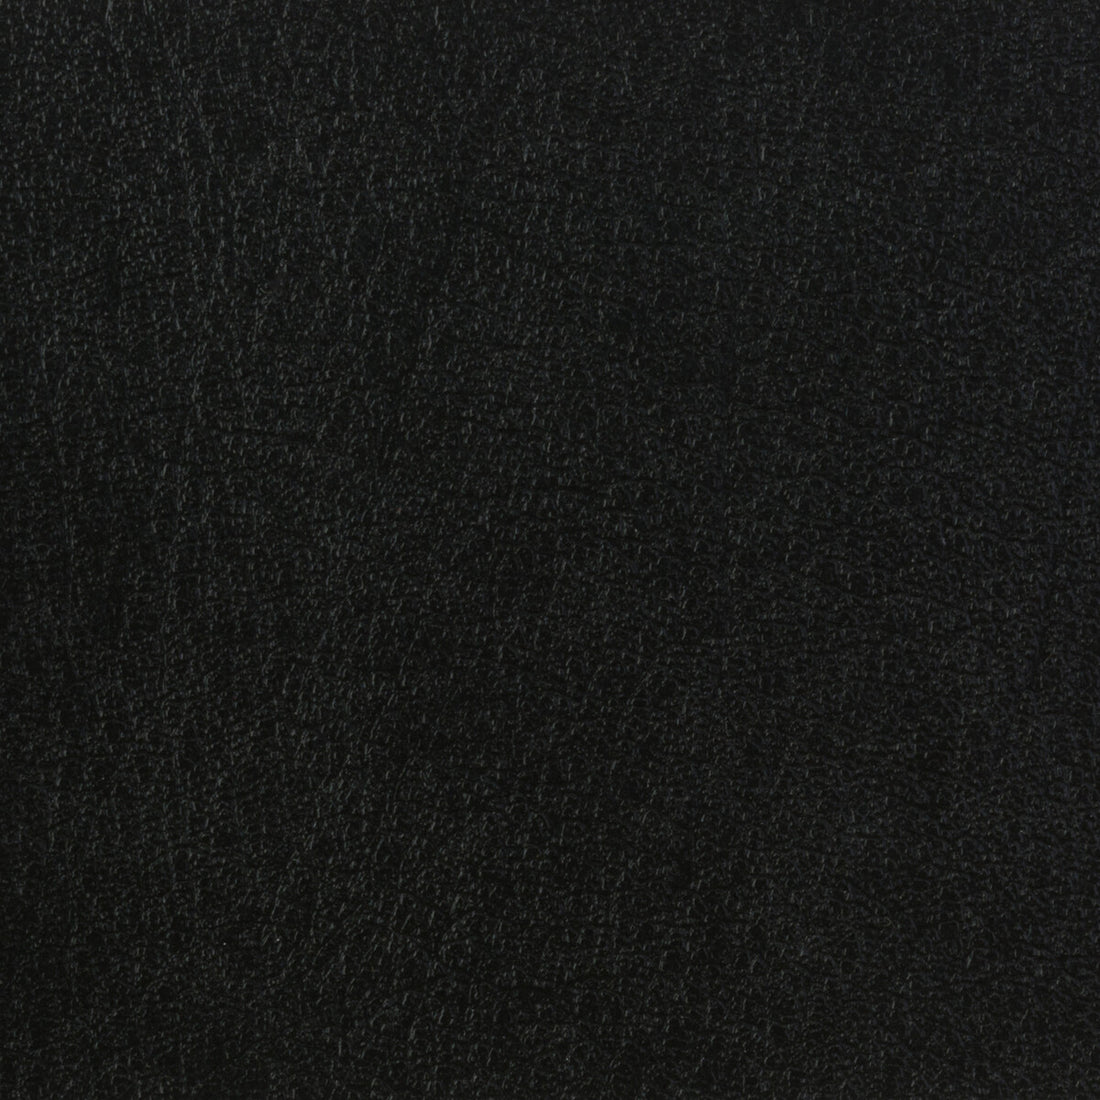 Kravet Basics fabric in celine-8 color - pattern CELINE.8.0 - by Kravet Basics